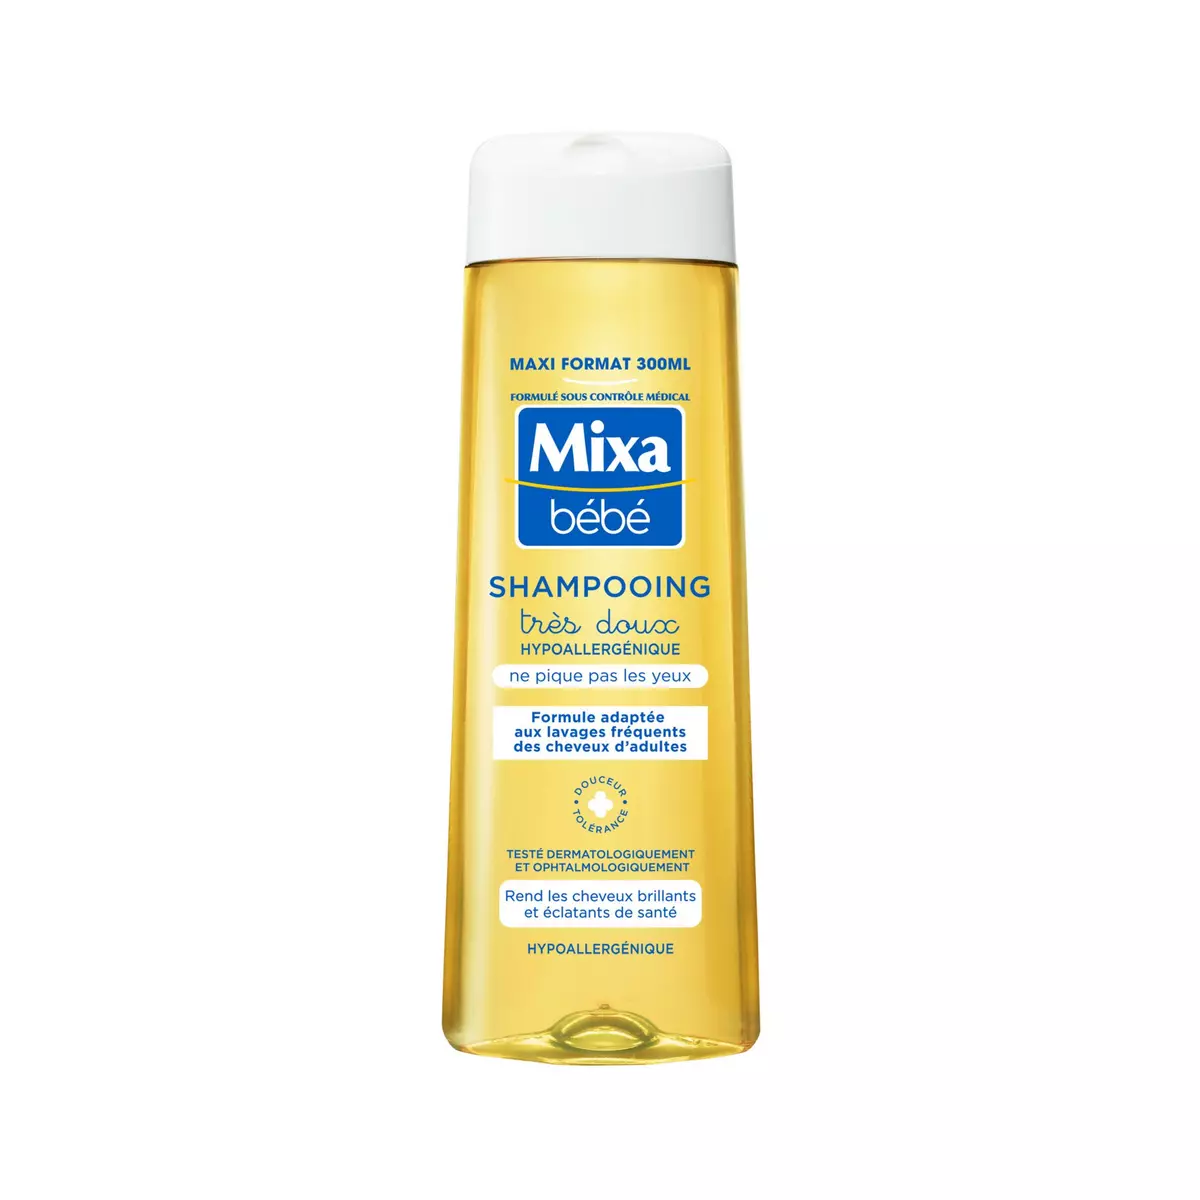 MIXA BEBE Shampooing très doux hypoallergénique 300ml